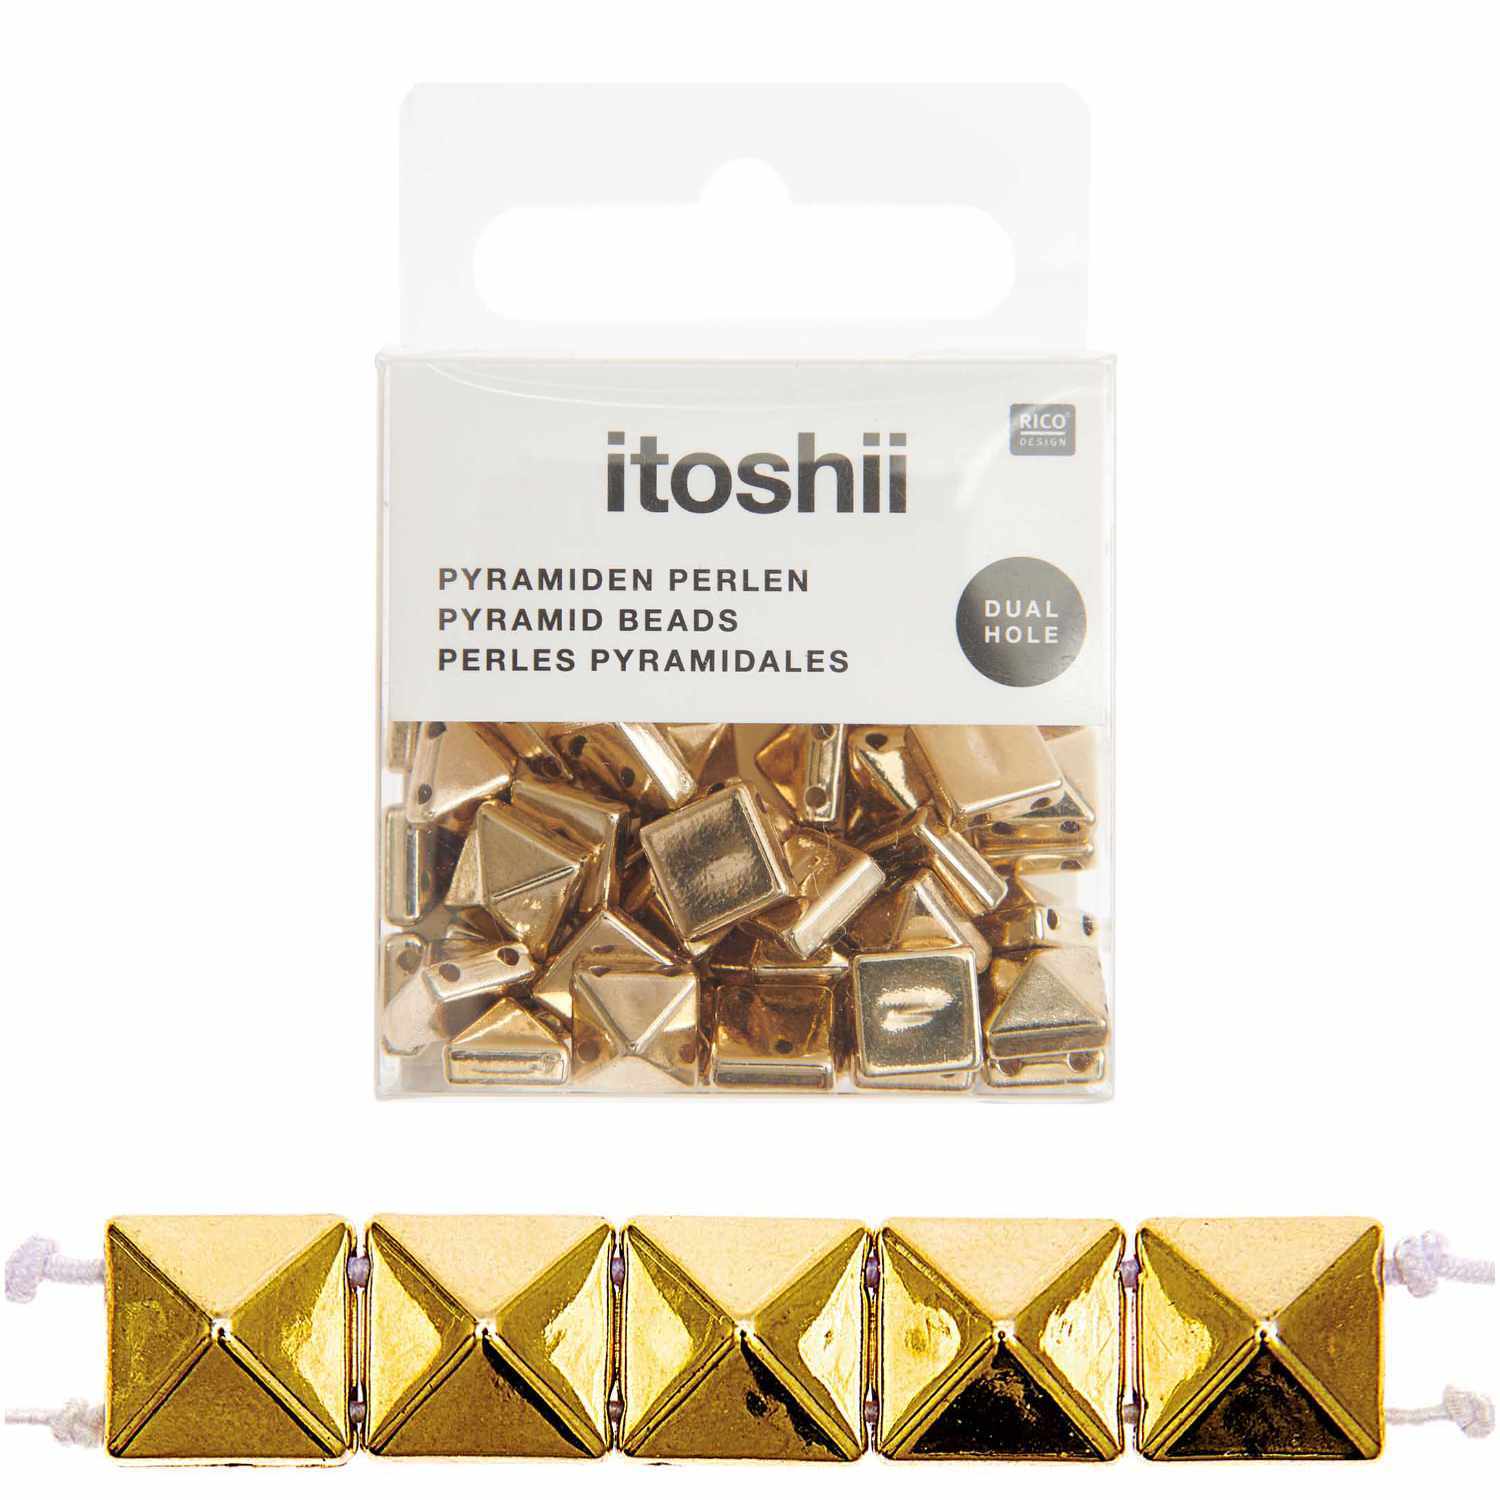 itoshii Pyramiden Perlen quadratisch gold